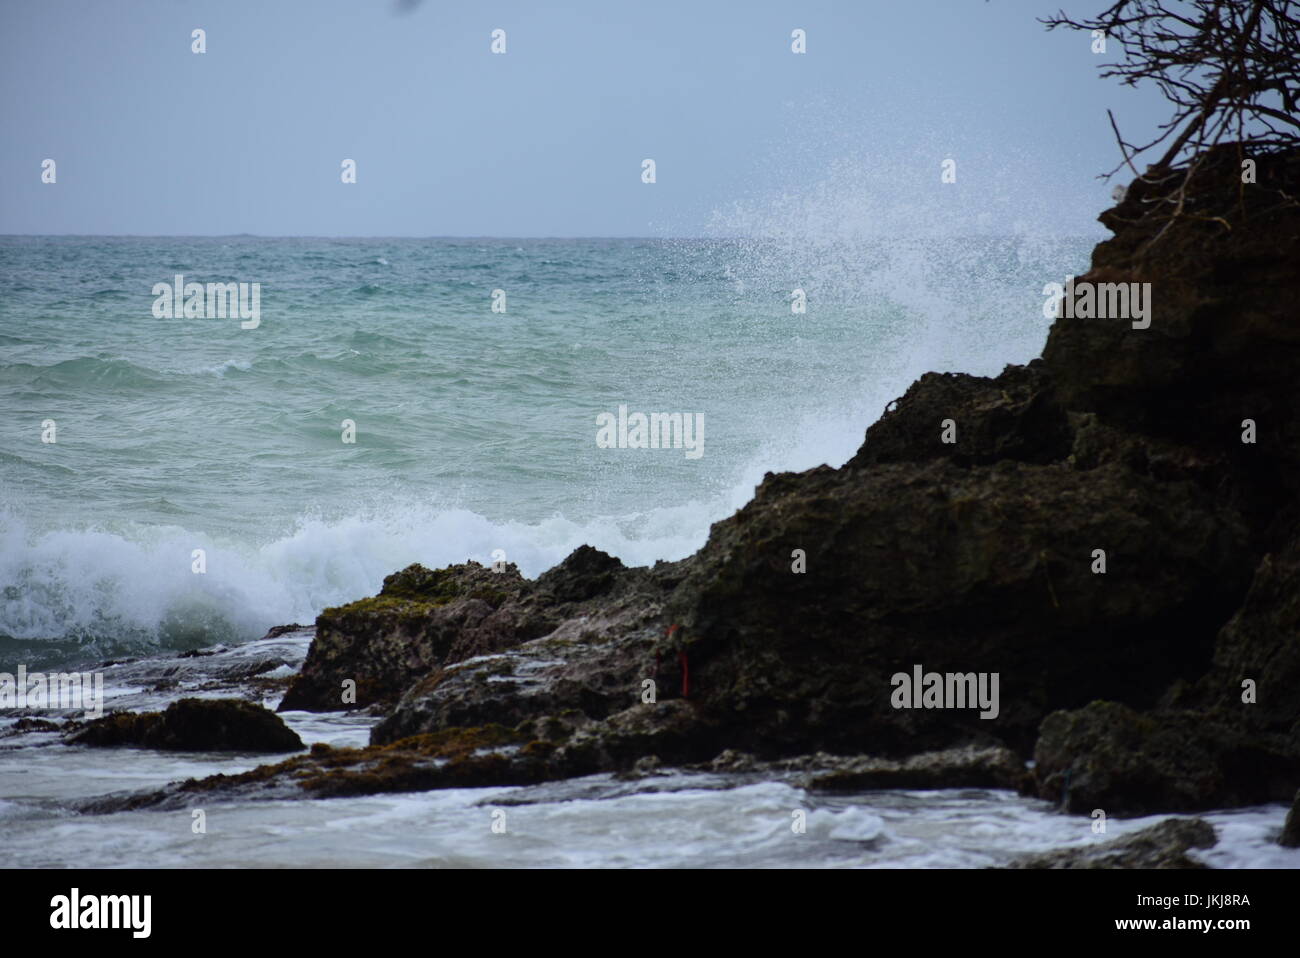 Fotografien von atemberaubenden Szenen in Tobago mit einer Sonne Baden Seerose im Teich, leere Bank mit Blick auf das Meer und das Meer mit Wellen Stockfoto